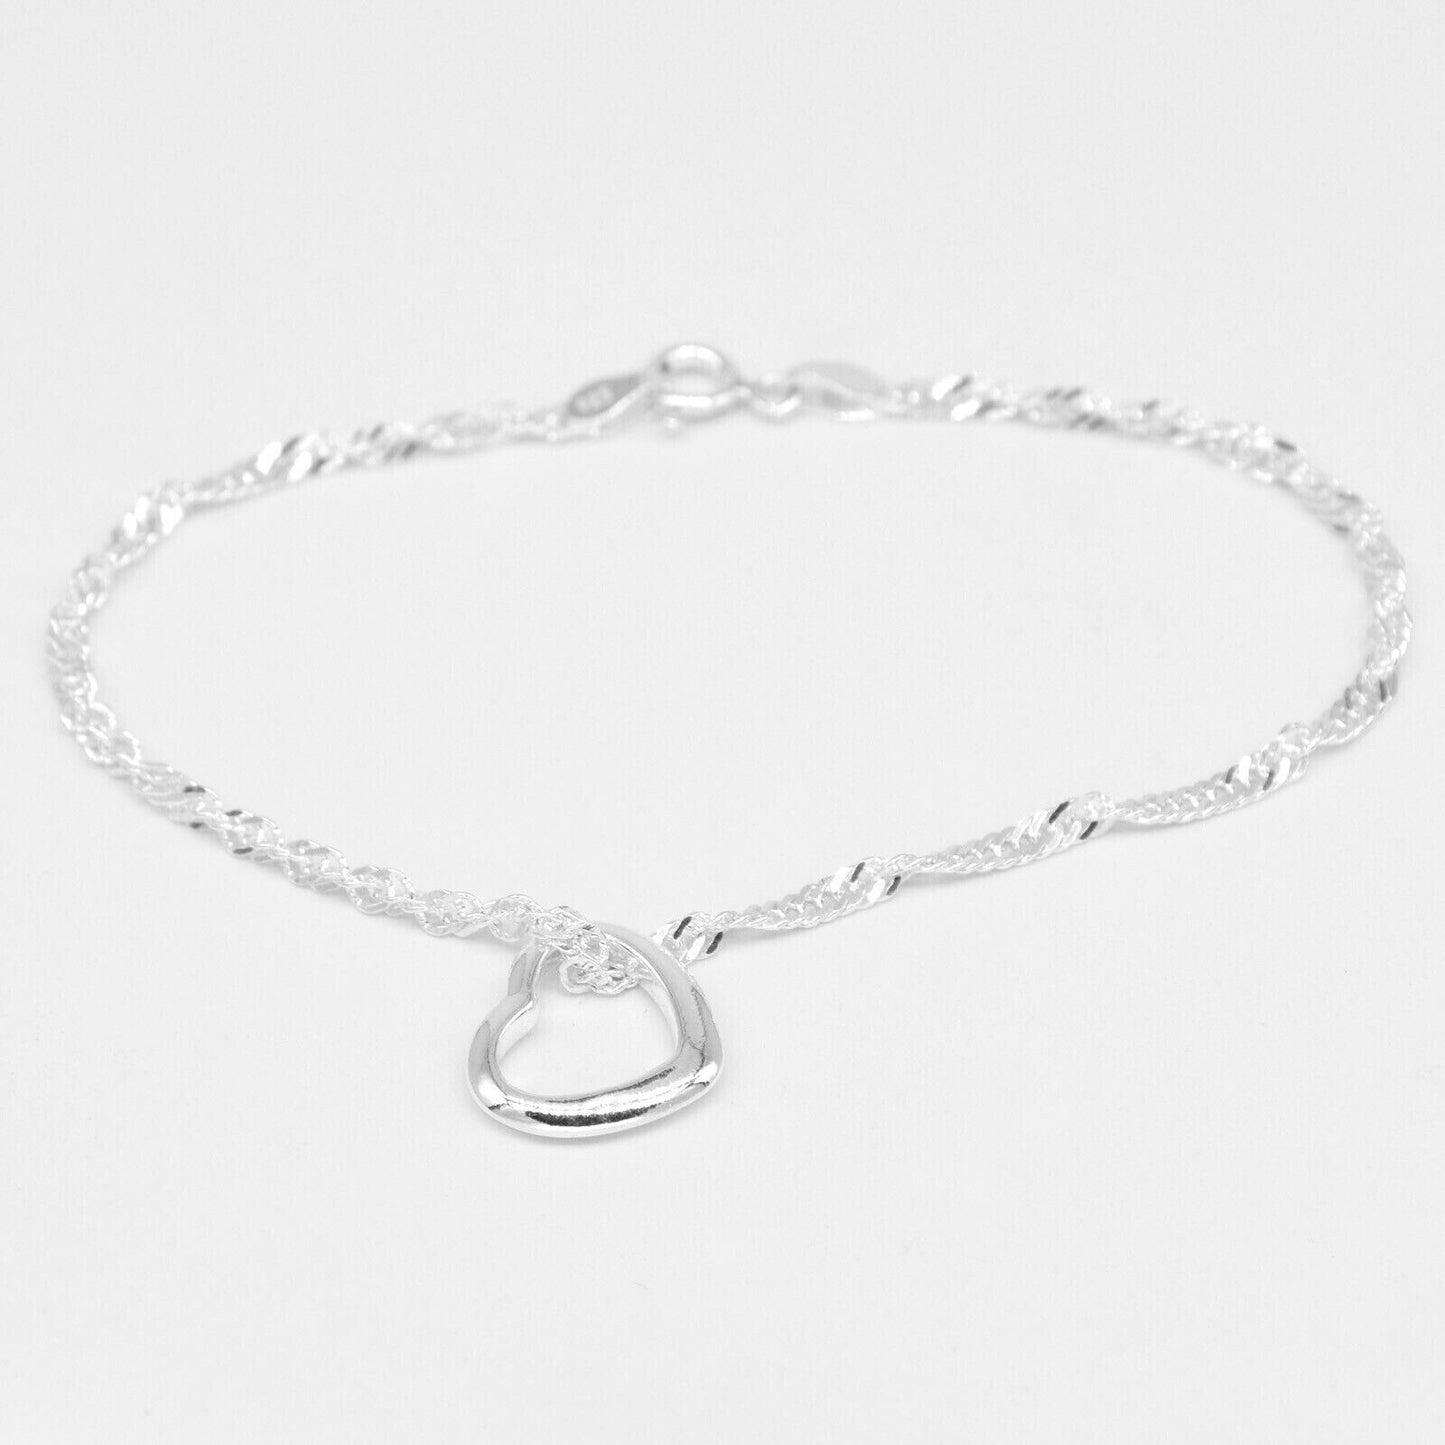 Genuine 925 Sterling Silver Singapore Chain Bracelet W/ Open Heart Charm